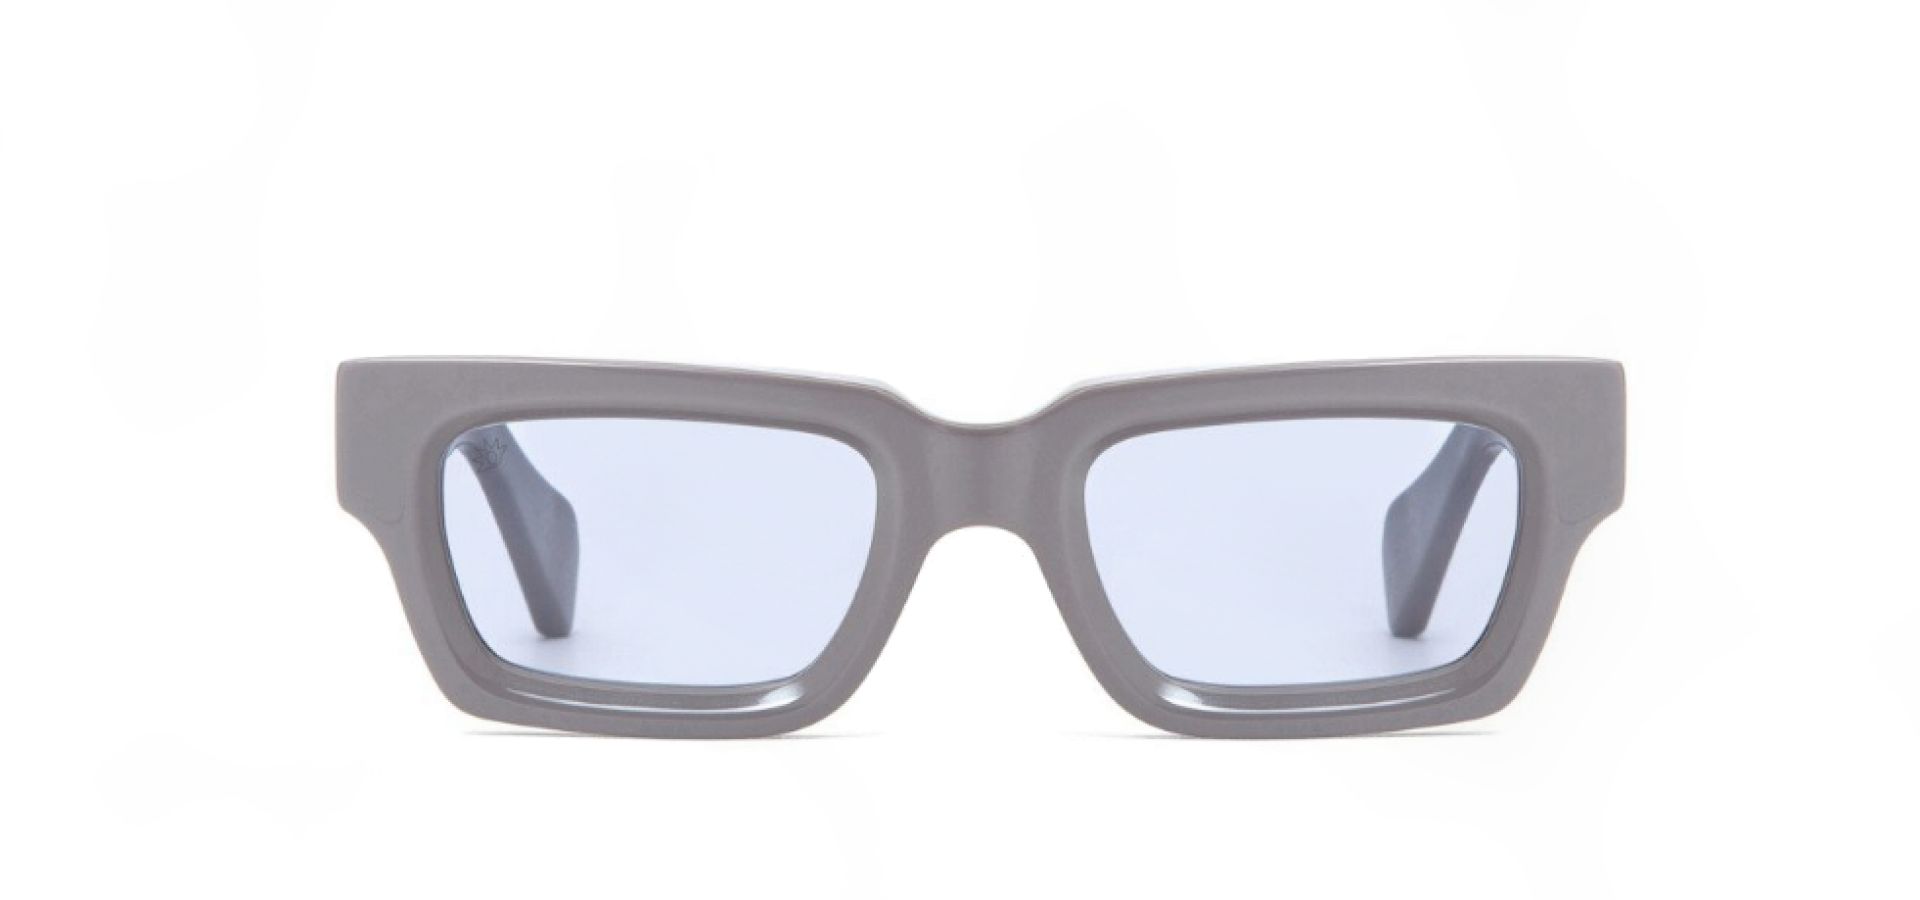 Sončna očala TAVAT SM001: Velikost: 50/22, Spol: ženska, Material: acetat